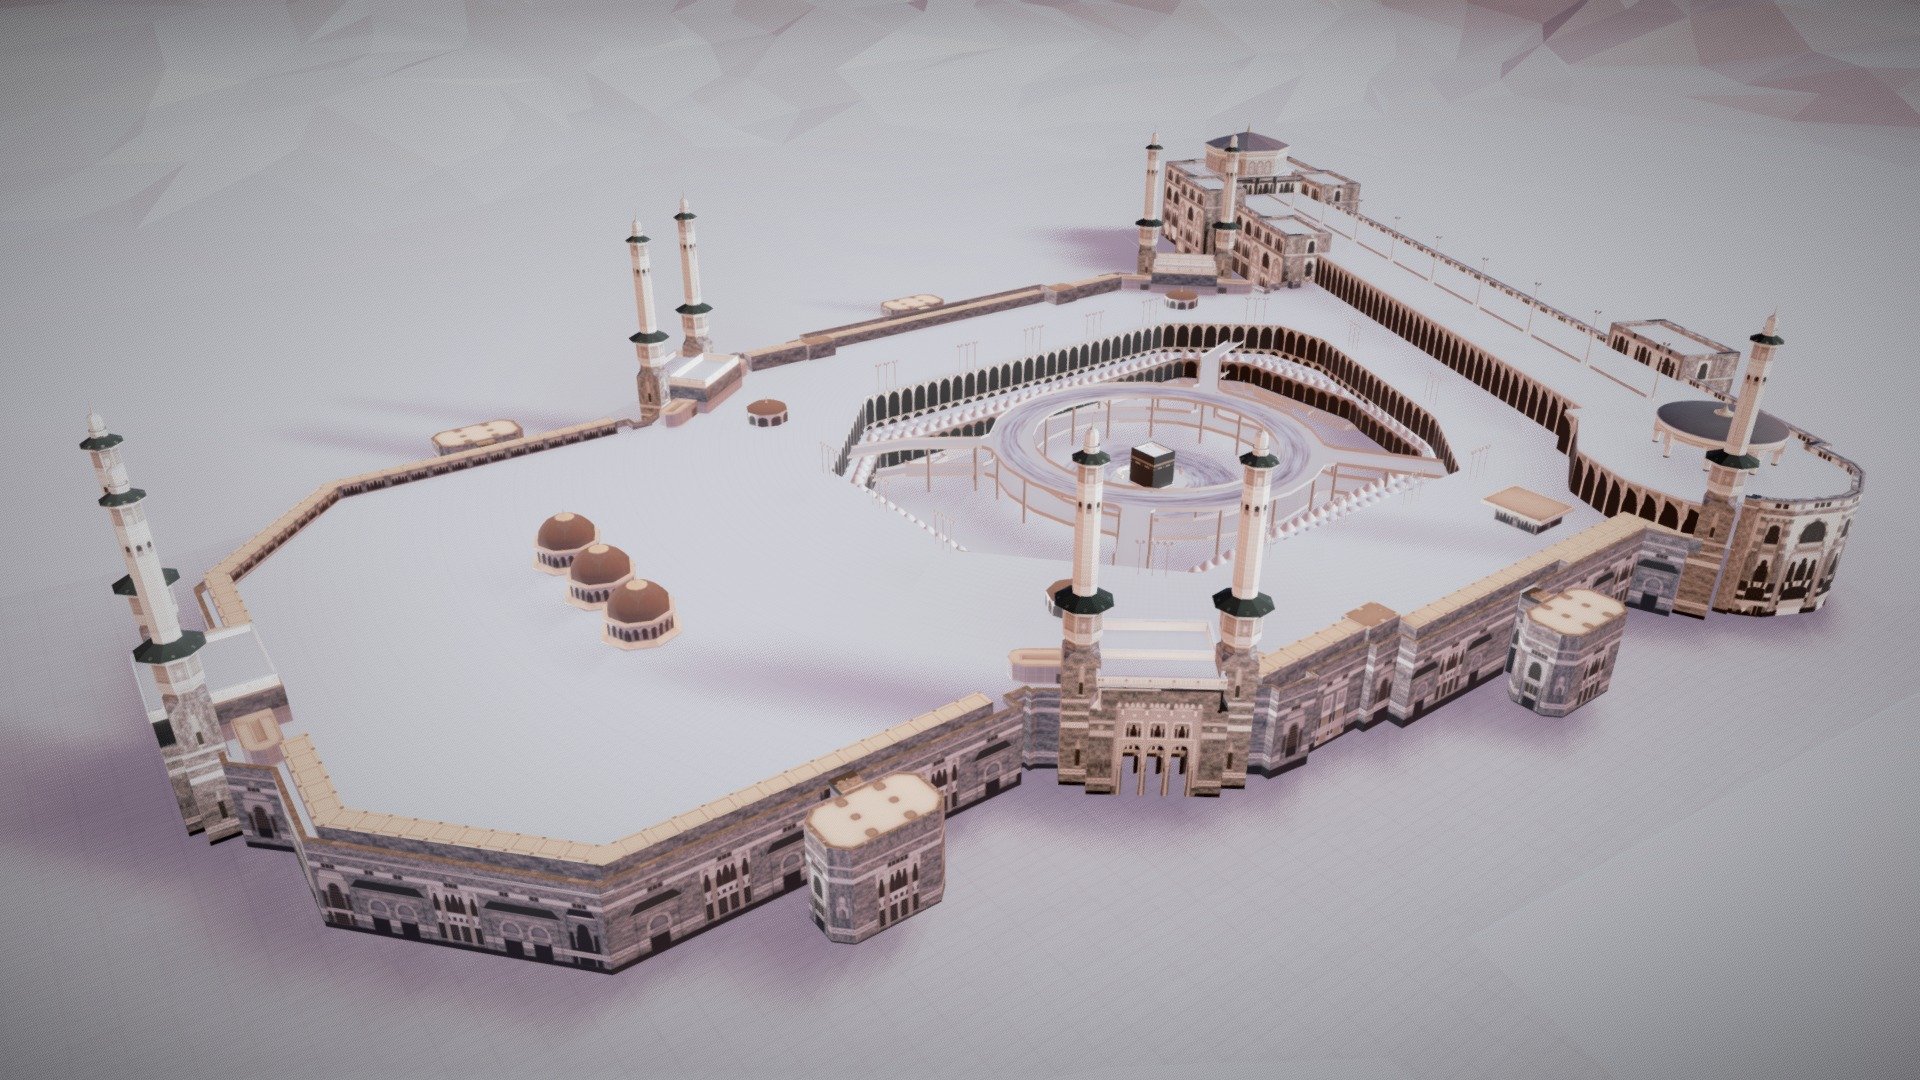 MASJIDIL HARAM 360 by kaaba 

Masjid Agung Mekkah adalah masjid terbesar di Dunia, dan mengelilingi tempat tersuci Islam, Ka'bah, di kota Mekah, Hijaz, Arab Saudi.

The Grand Mosque of Makkah also called the Great Mosque of Mecca is the largest mosque in the World, and surrounds Islam's holiest place, the Kaaba, in the city of Mecca, Hejaz, Saudi Arabia.

Visit www.kaaba.co.id - Great Mosque of Mecca - 3D model by kaaba 3d model